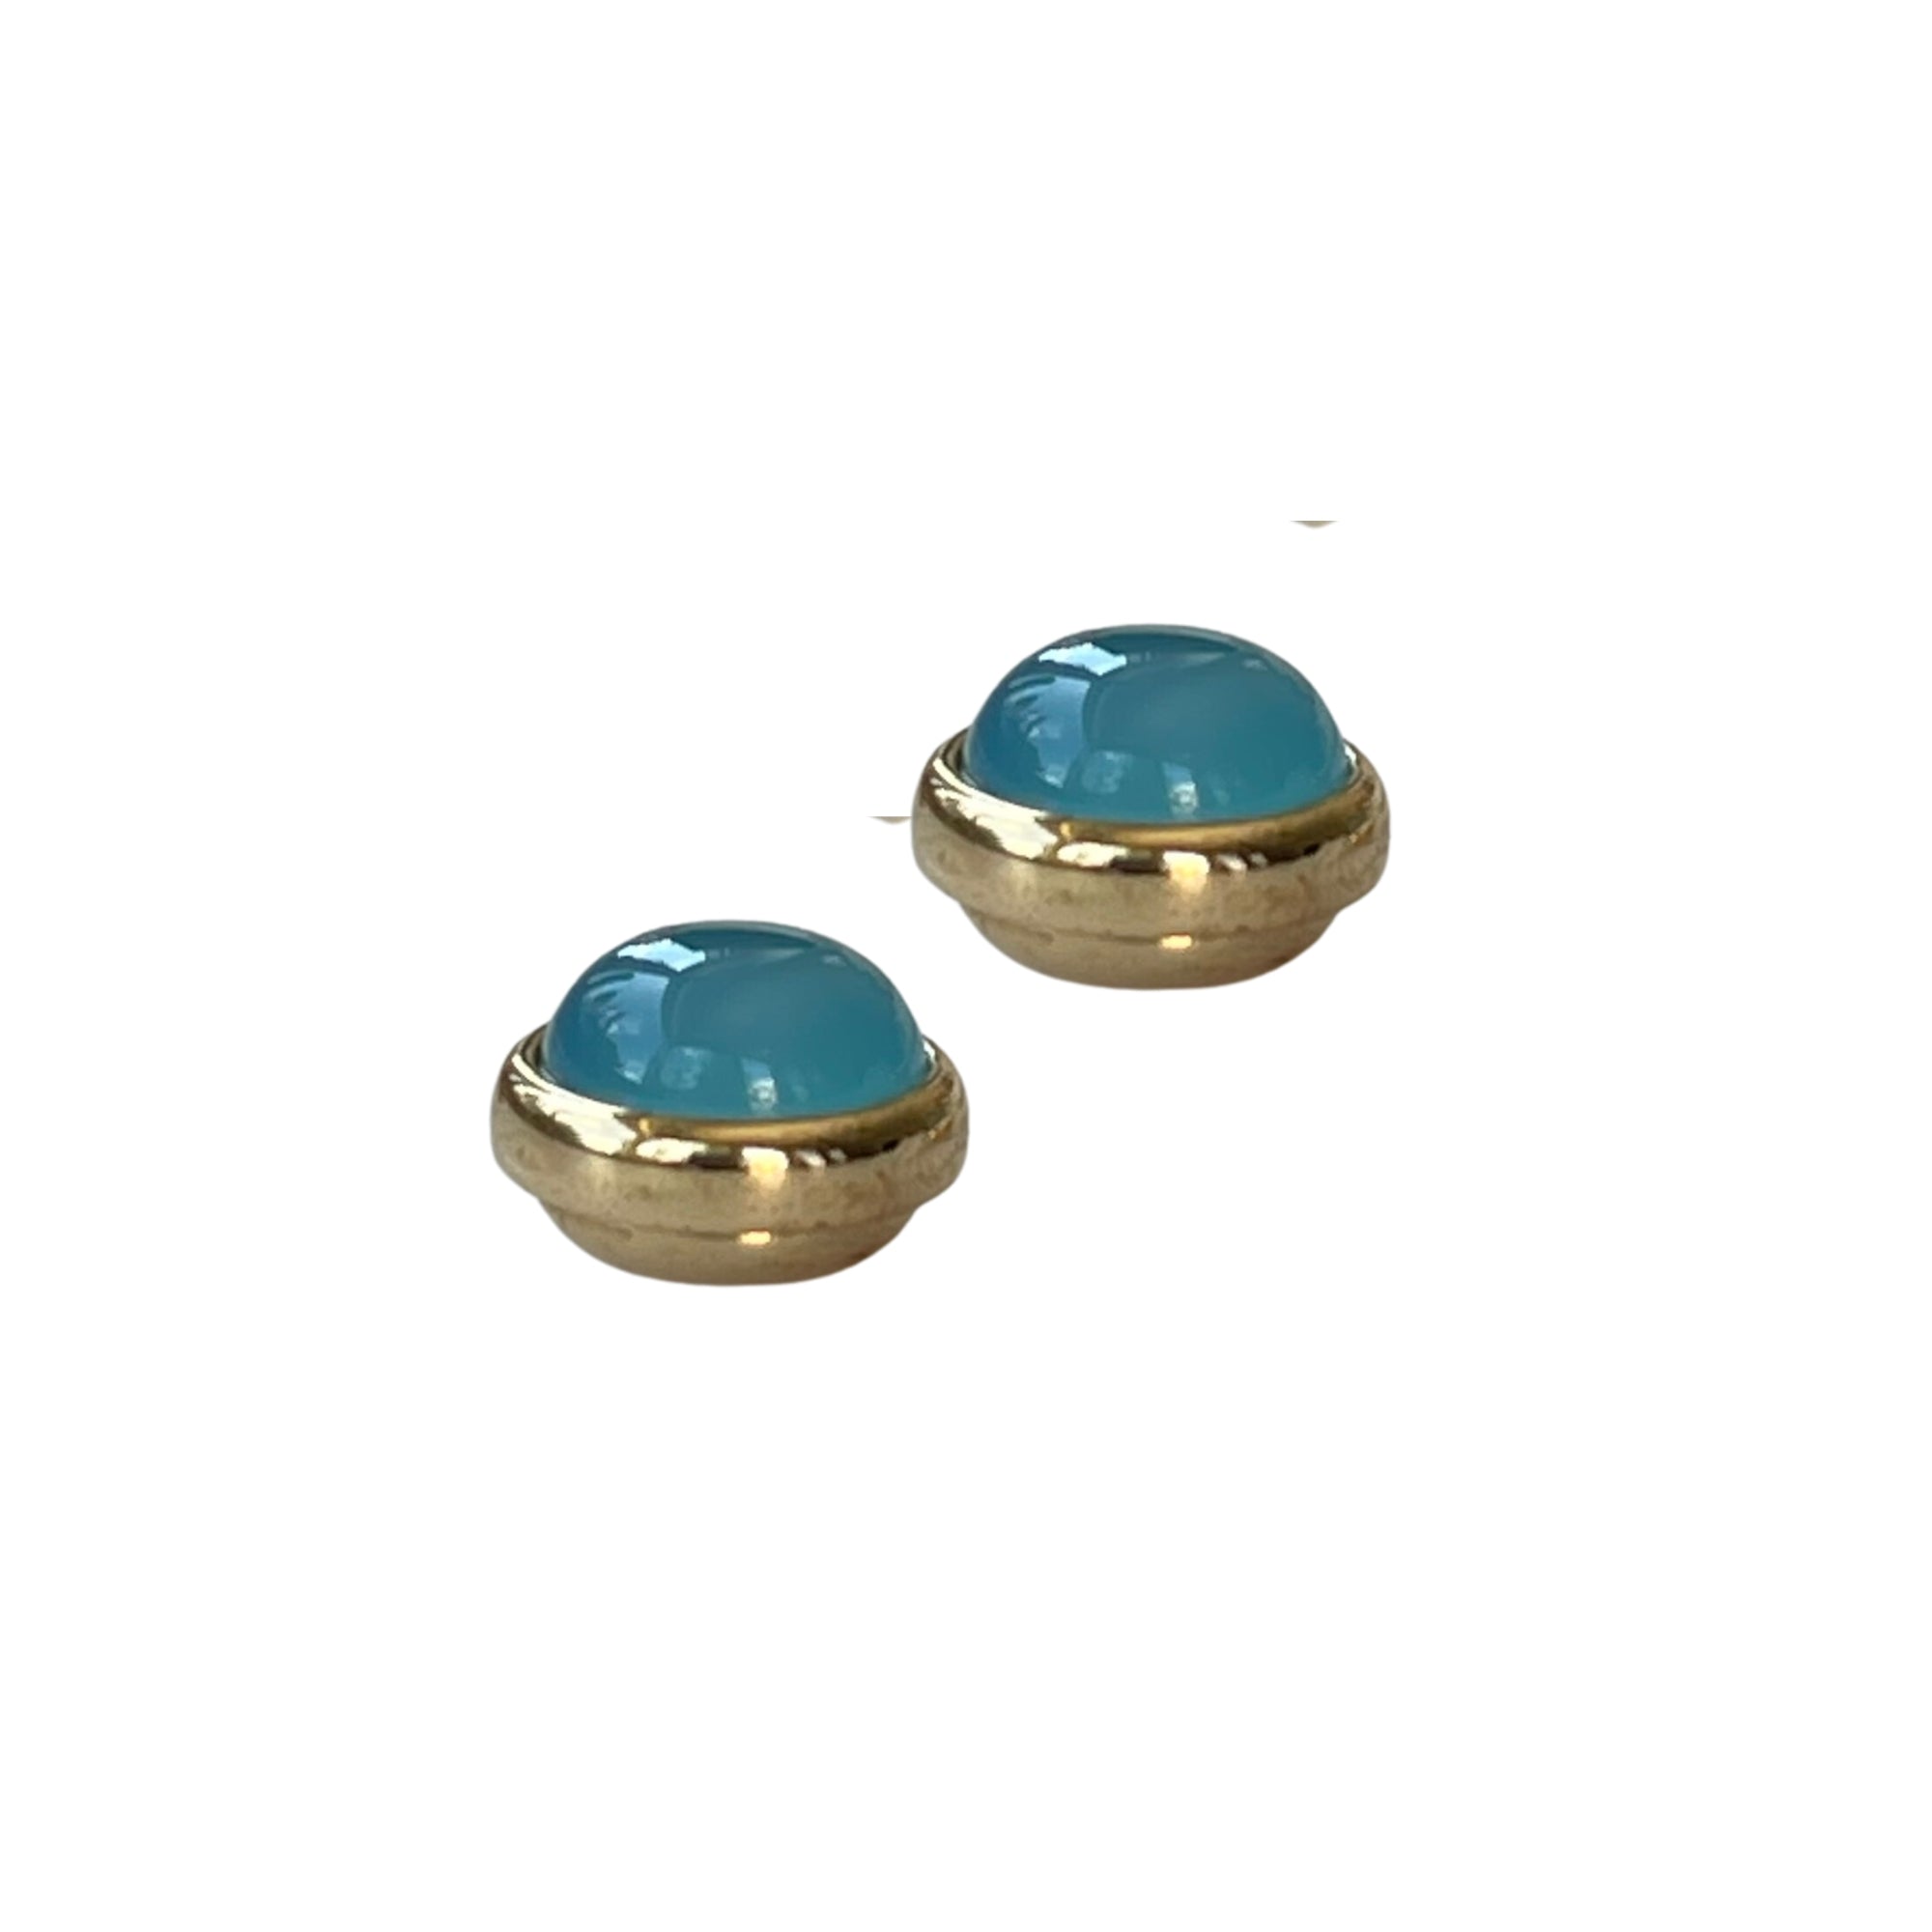 Ohrring mit Magnetverschluss aus blauem Achat - Durchmesser: 1,2 cm - Der Magnetverschluss erleichtert das Anlegen und sorgt dafür, dass der Ohrring fest im Ohr sitzt. 